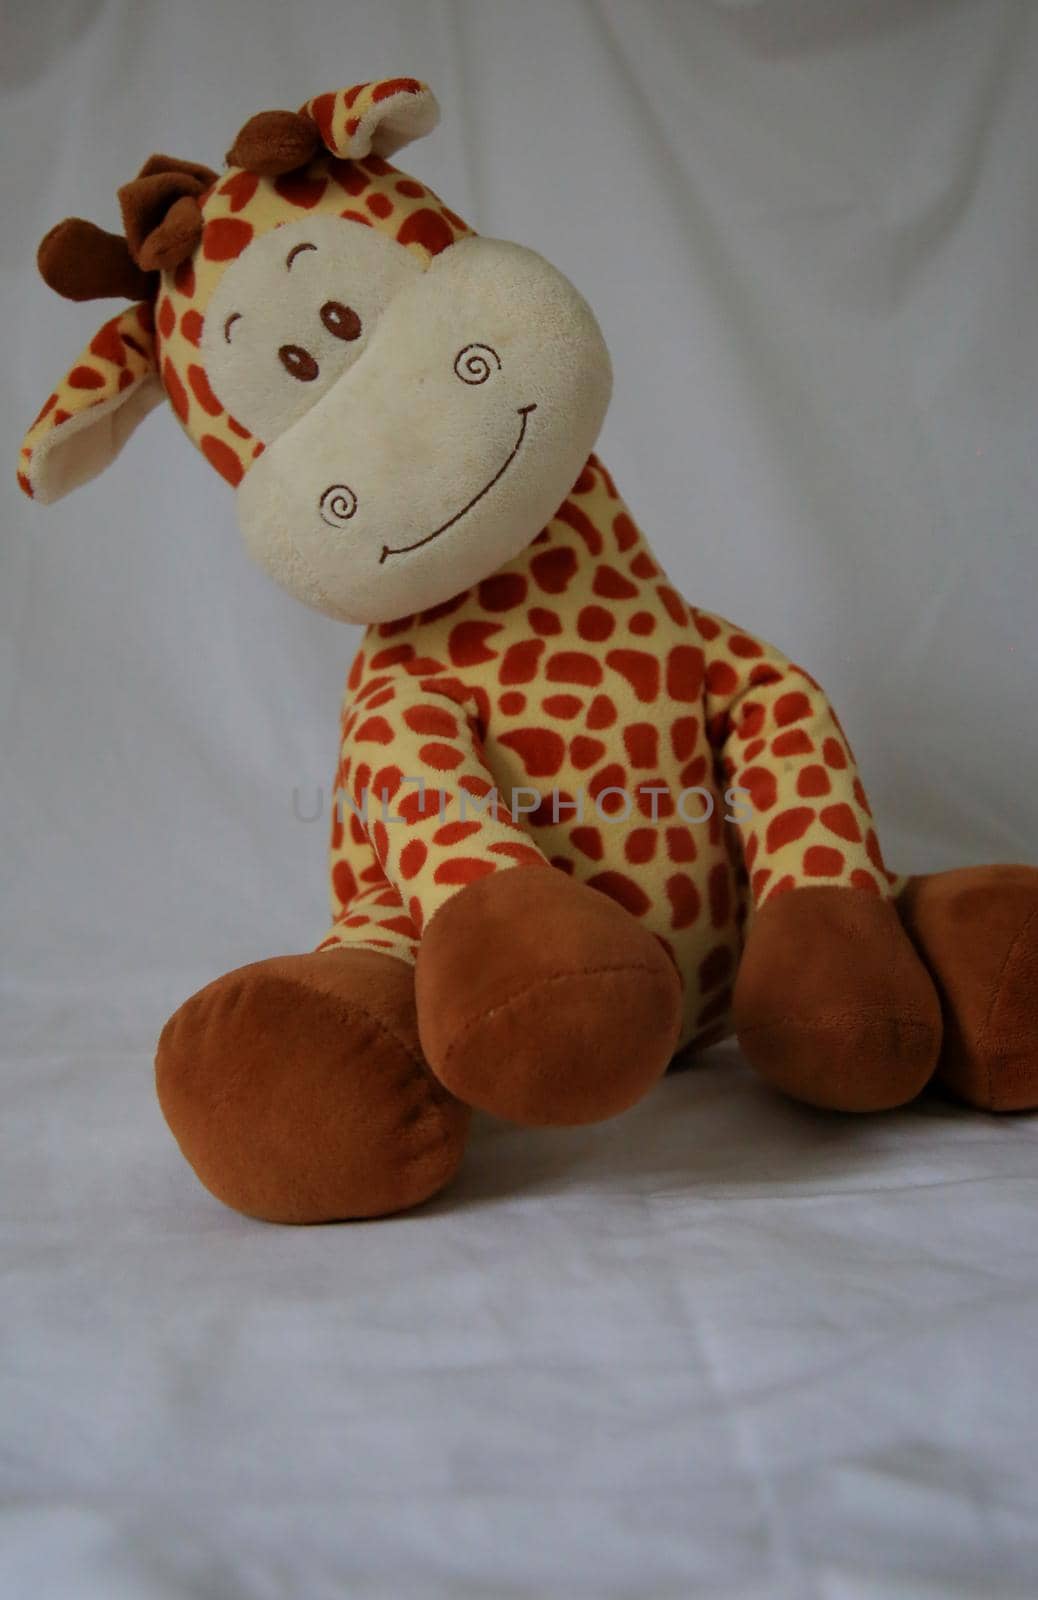 salvador, bahia / brazil - may 6, 2020: plush giraffe toy seen in the city of Salvador.